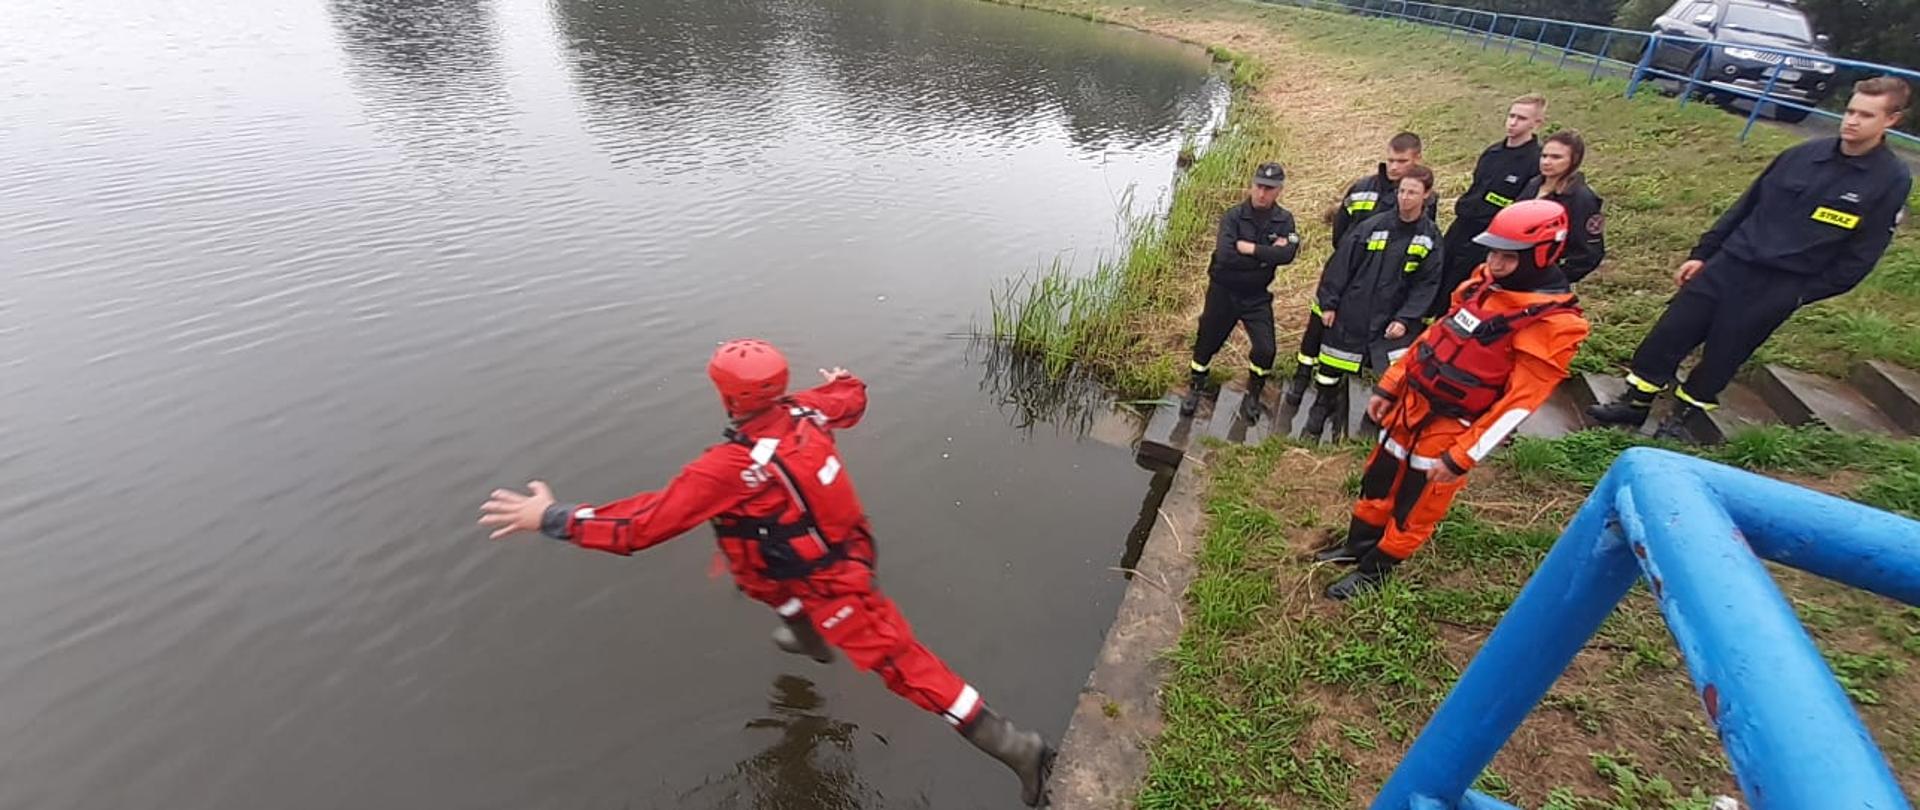 Strażacy w suchych skafandrach koloru czerwonego ćwiczą skoki do wody.